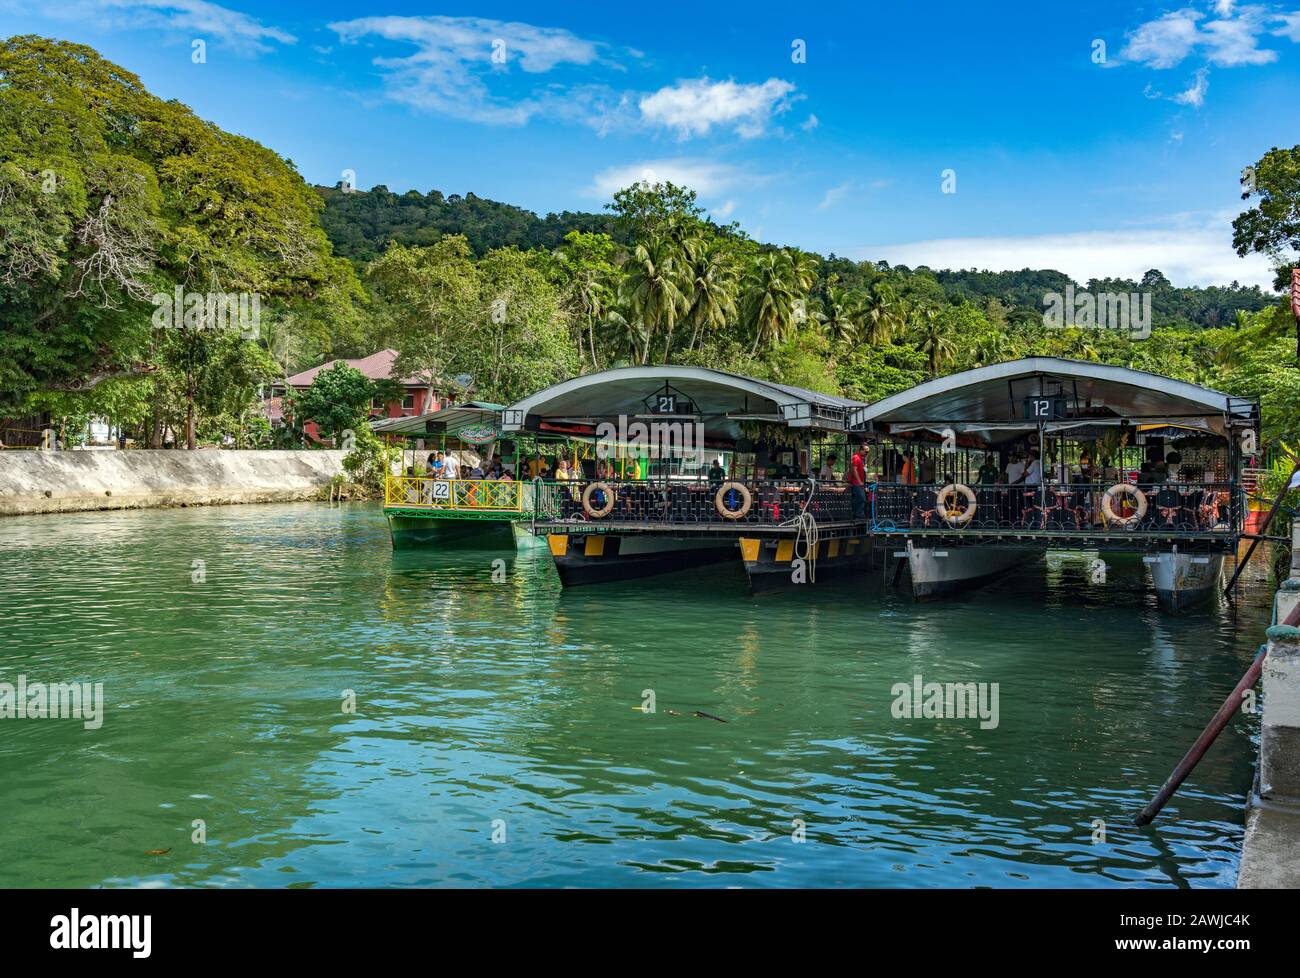 La nave da crociera sul fiume Loboc è un fiume nella provincia di Bohol delle Filippine. E' una delle principali destinazioni turistiche di Bohol. Foto Stock